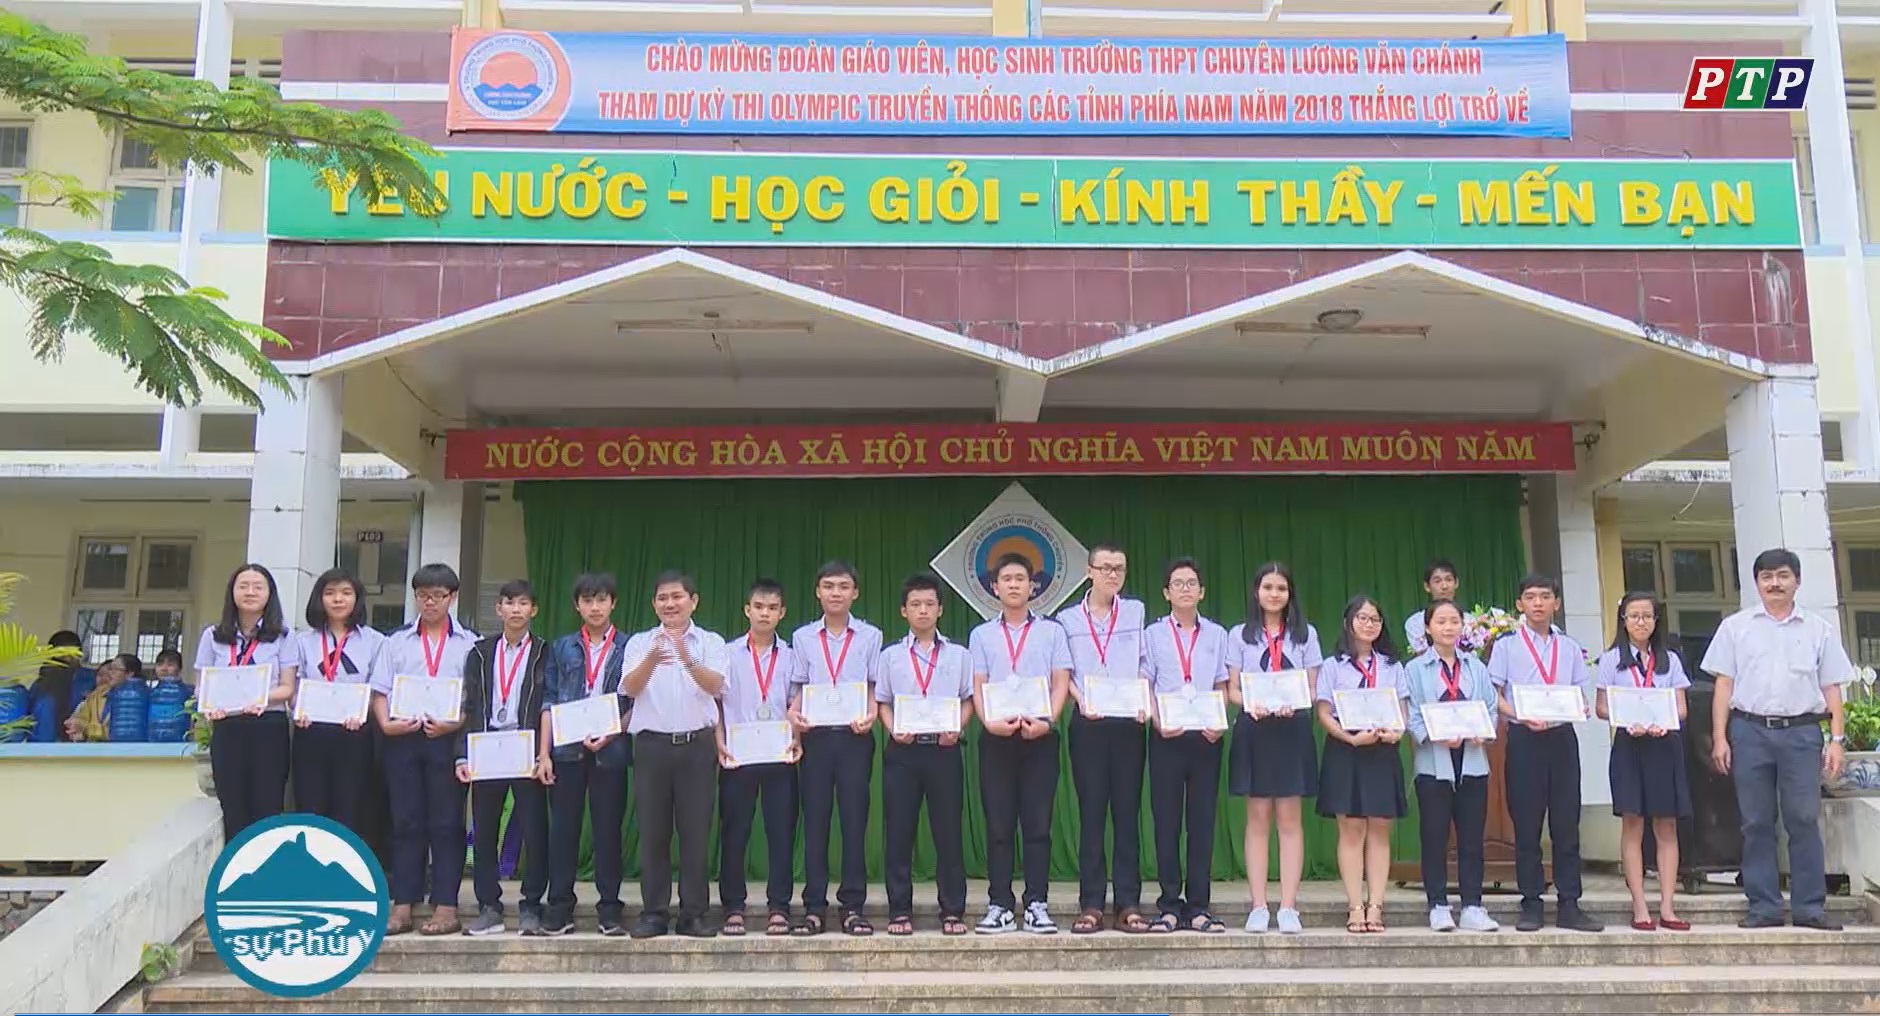 Khen thưởng học sinh đạt giải kỳ thi Olympic truyền thống 30/4 các tỉnh, thành phía Nam